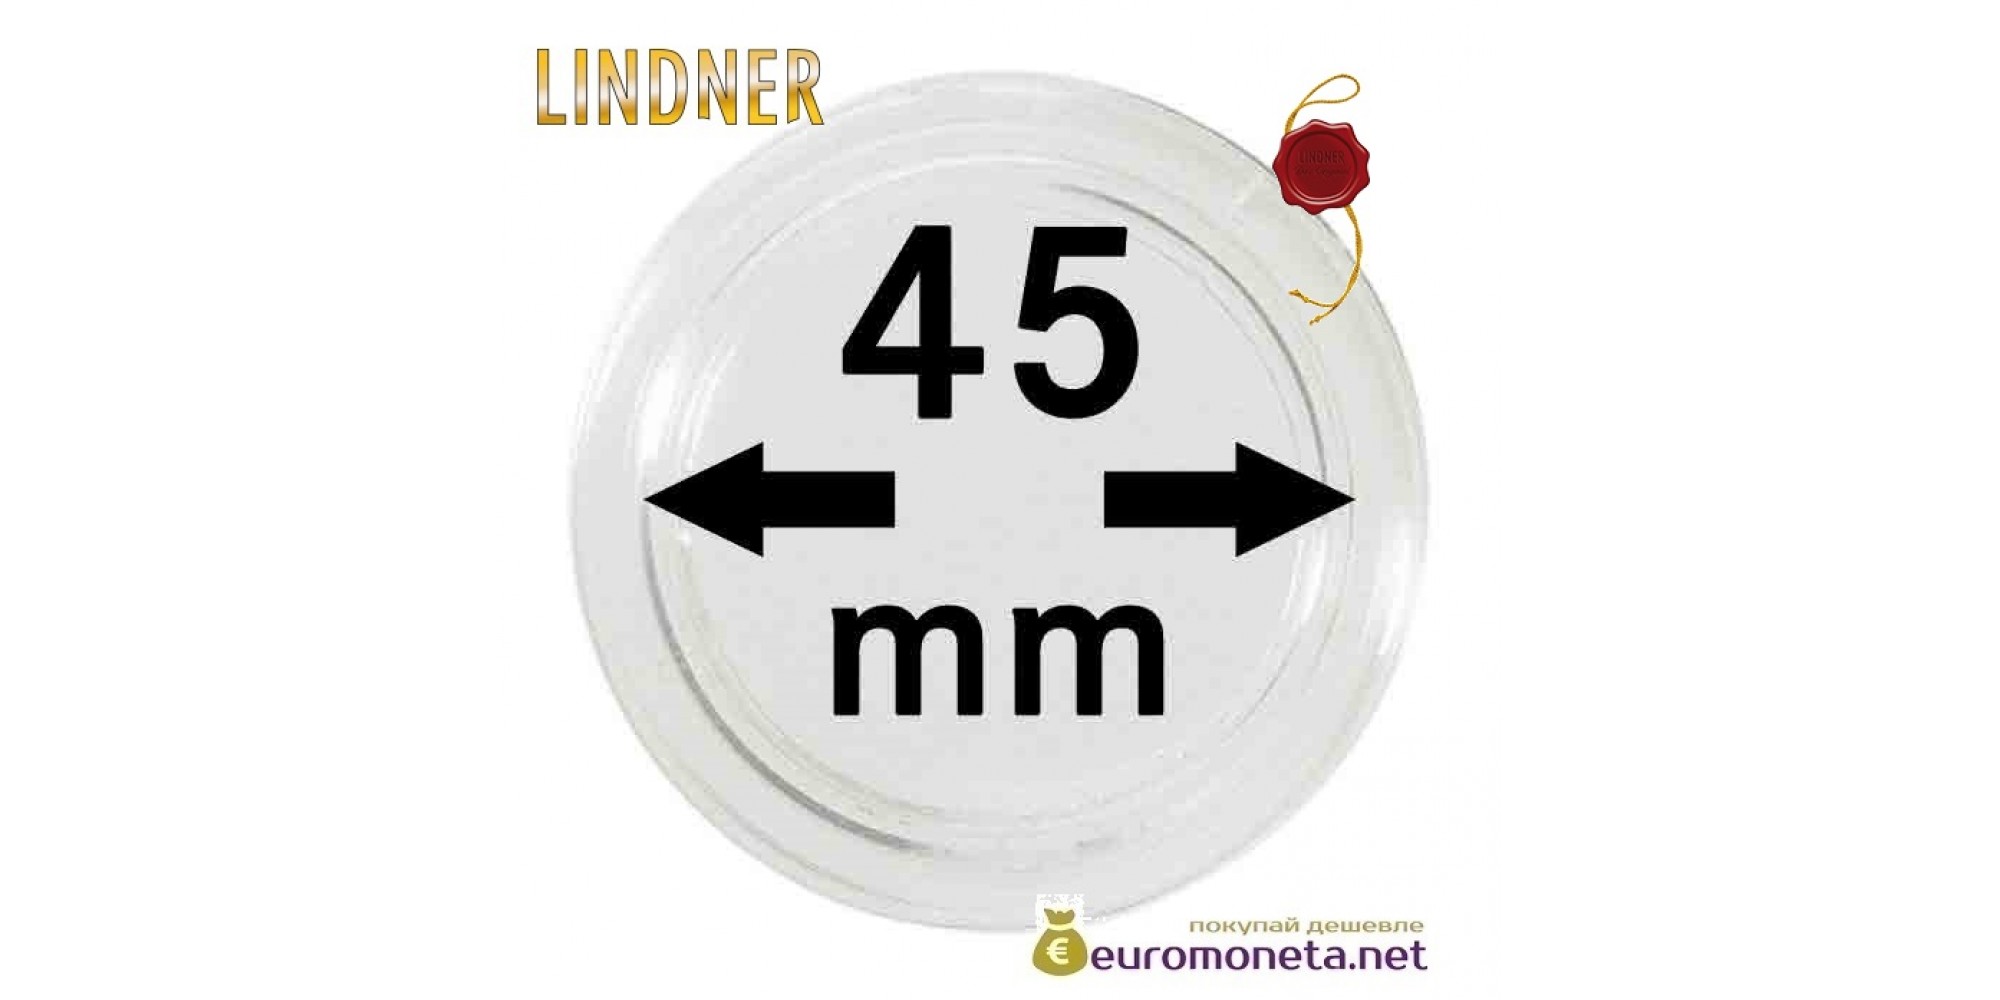 Lindner капсула для хранения монет 45 мм внутренний диаметр, внешний 51 мм, 10 штук, Германия